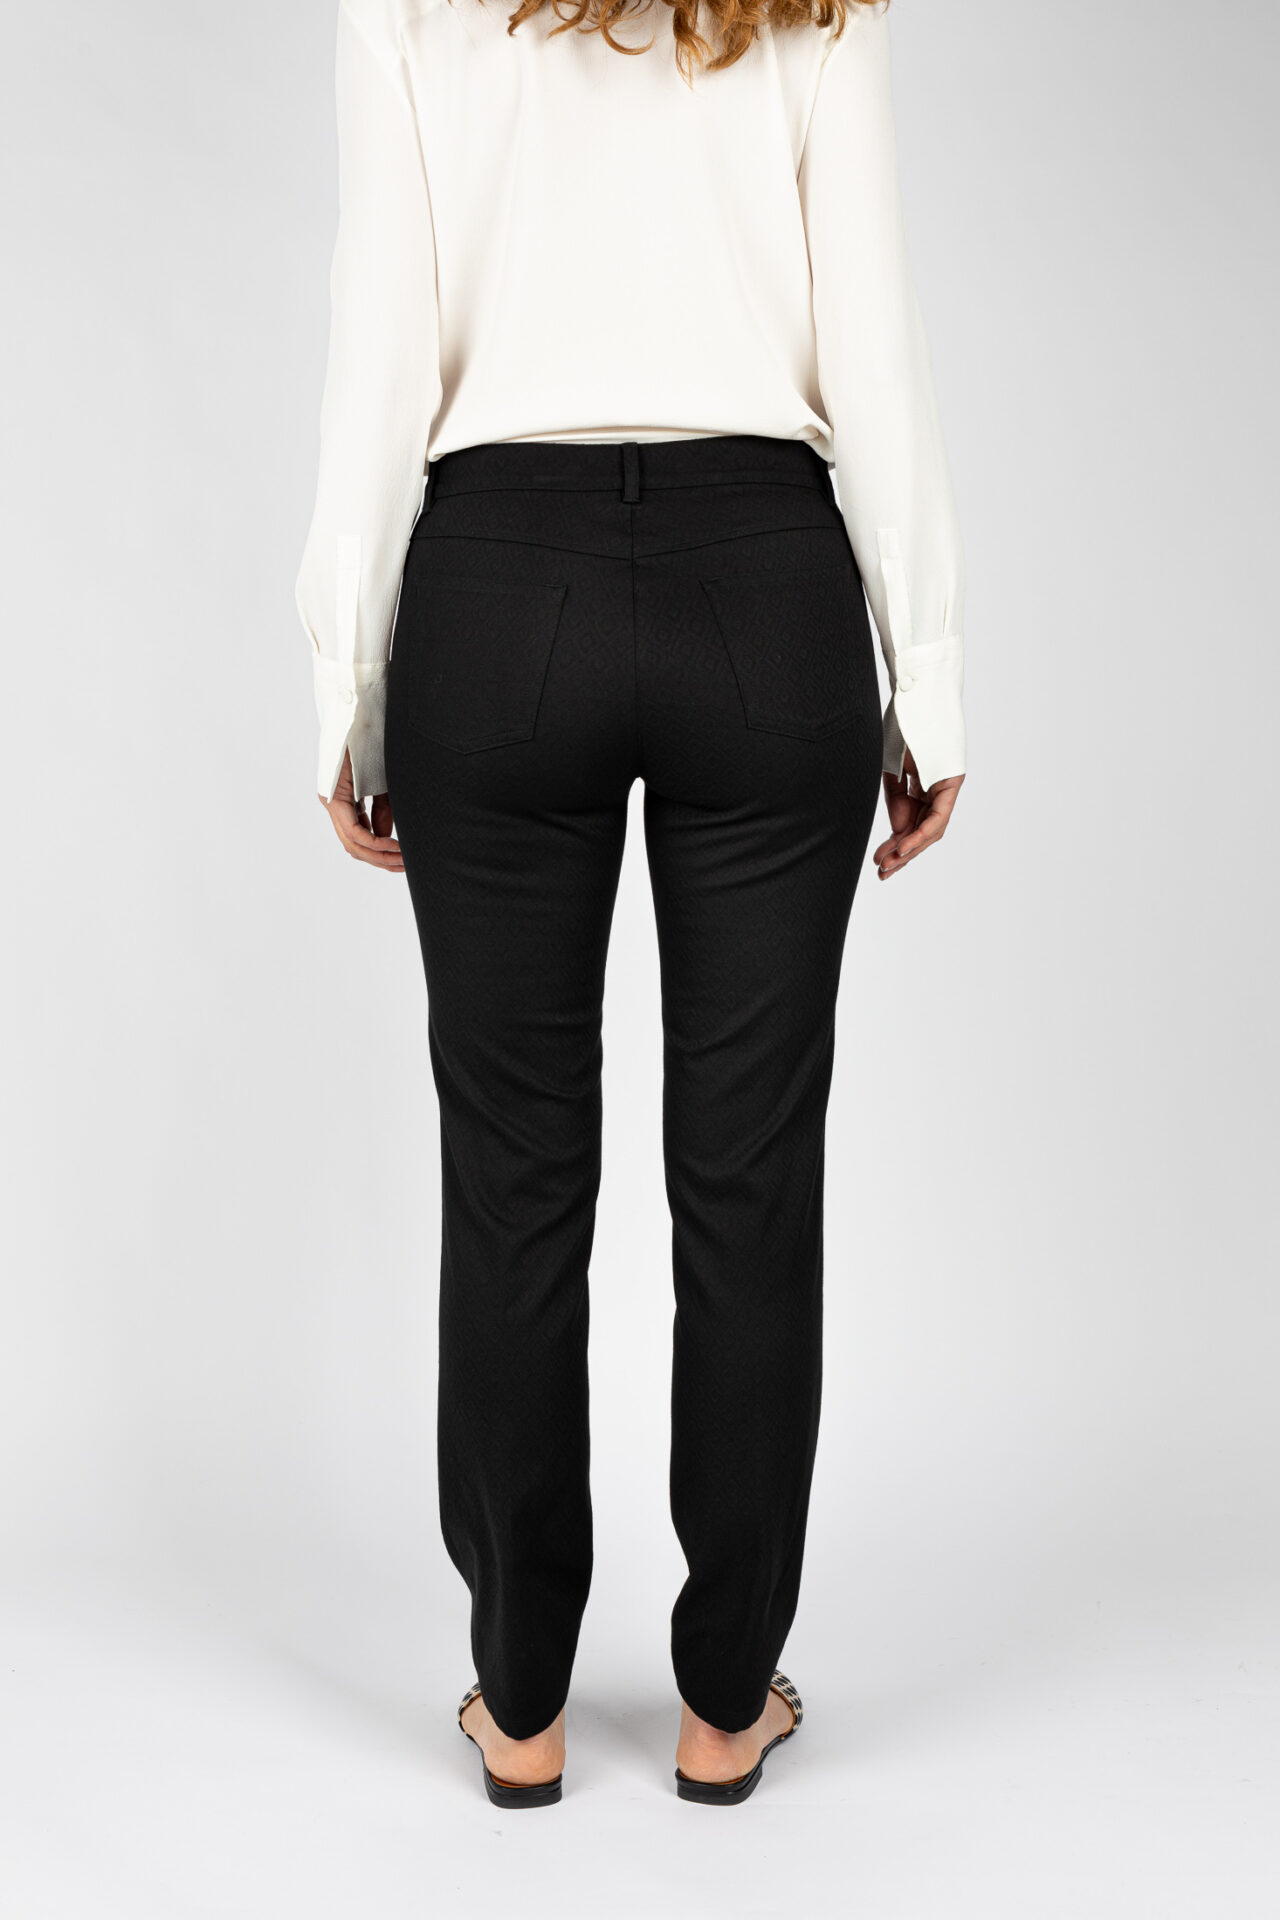 Pantaloni modello Jeans gamba regolare colore nero da donna P19630T57 - 4